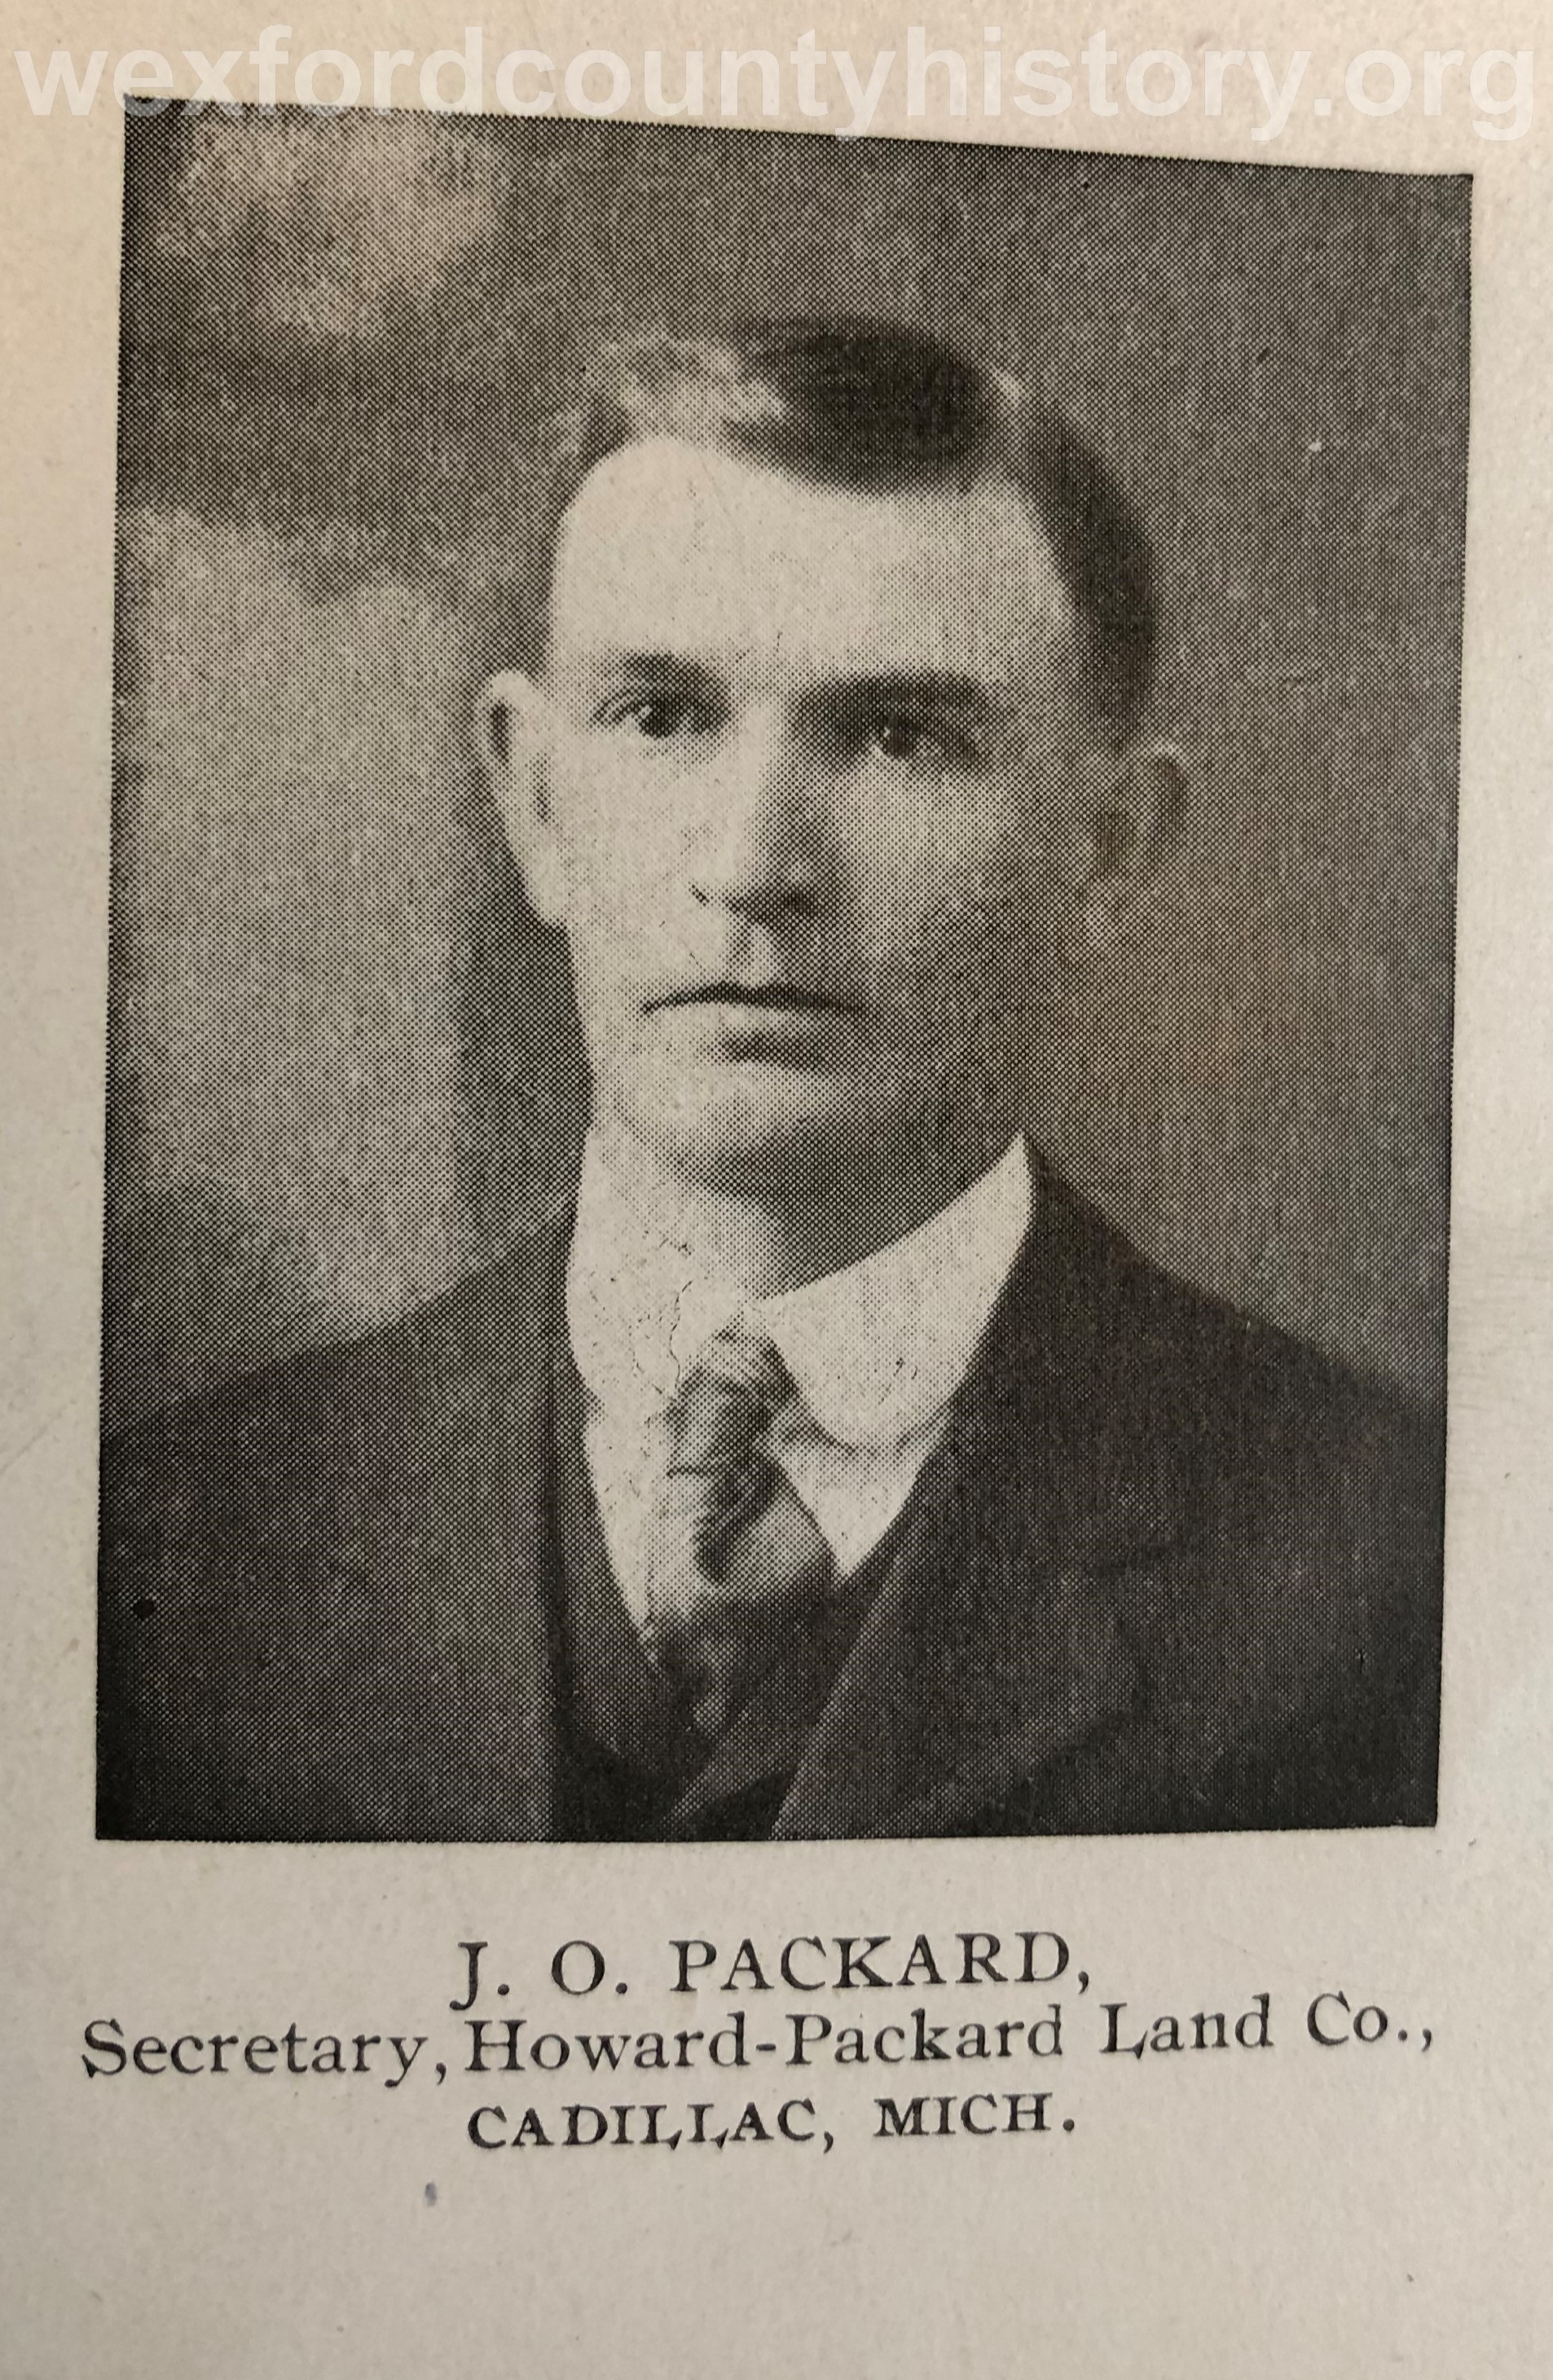 J. O. Packard